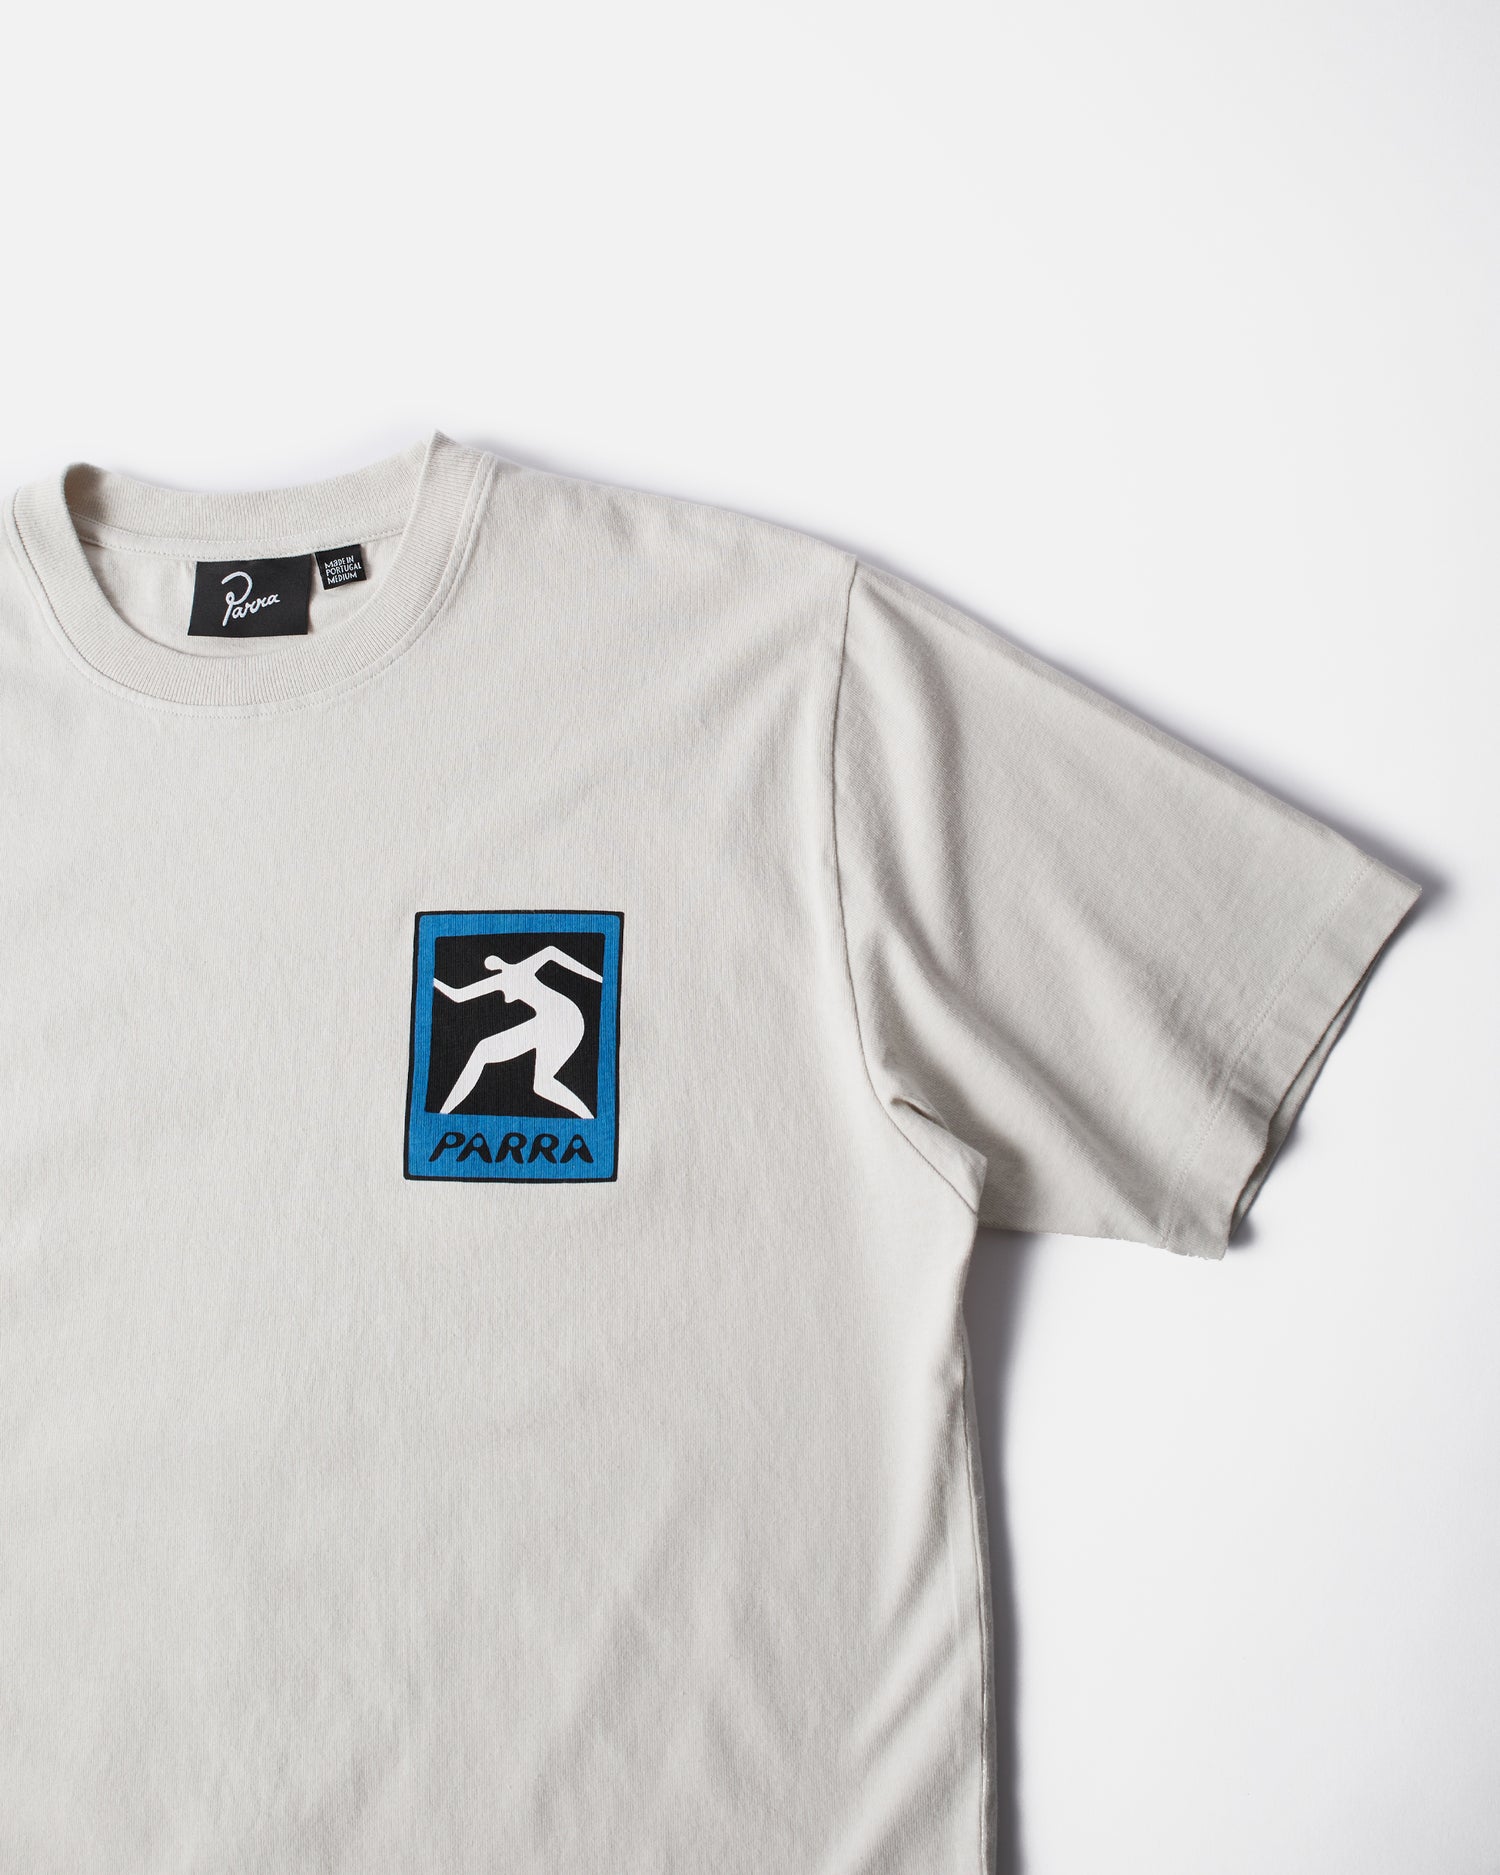 byParra Pigeon Legs T-shirt (Light Grey)